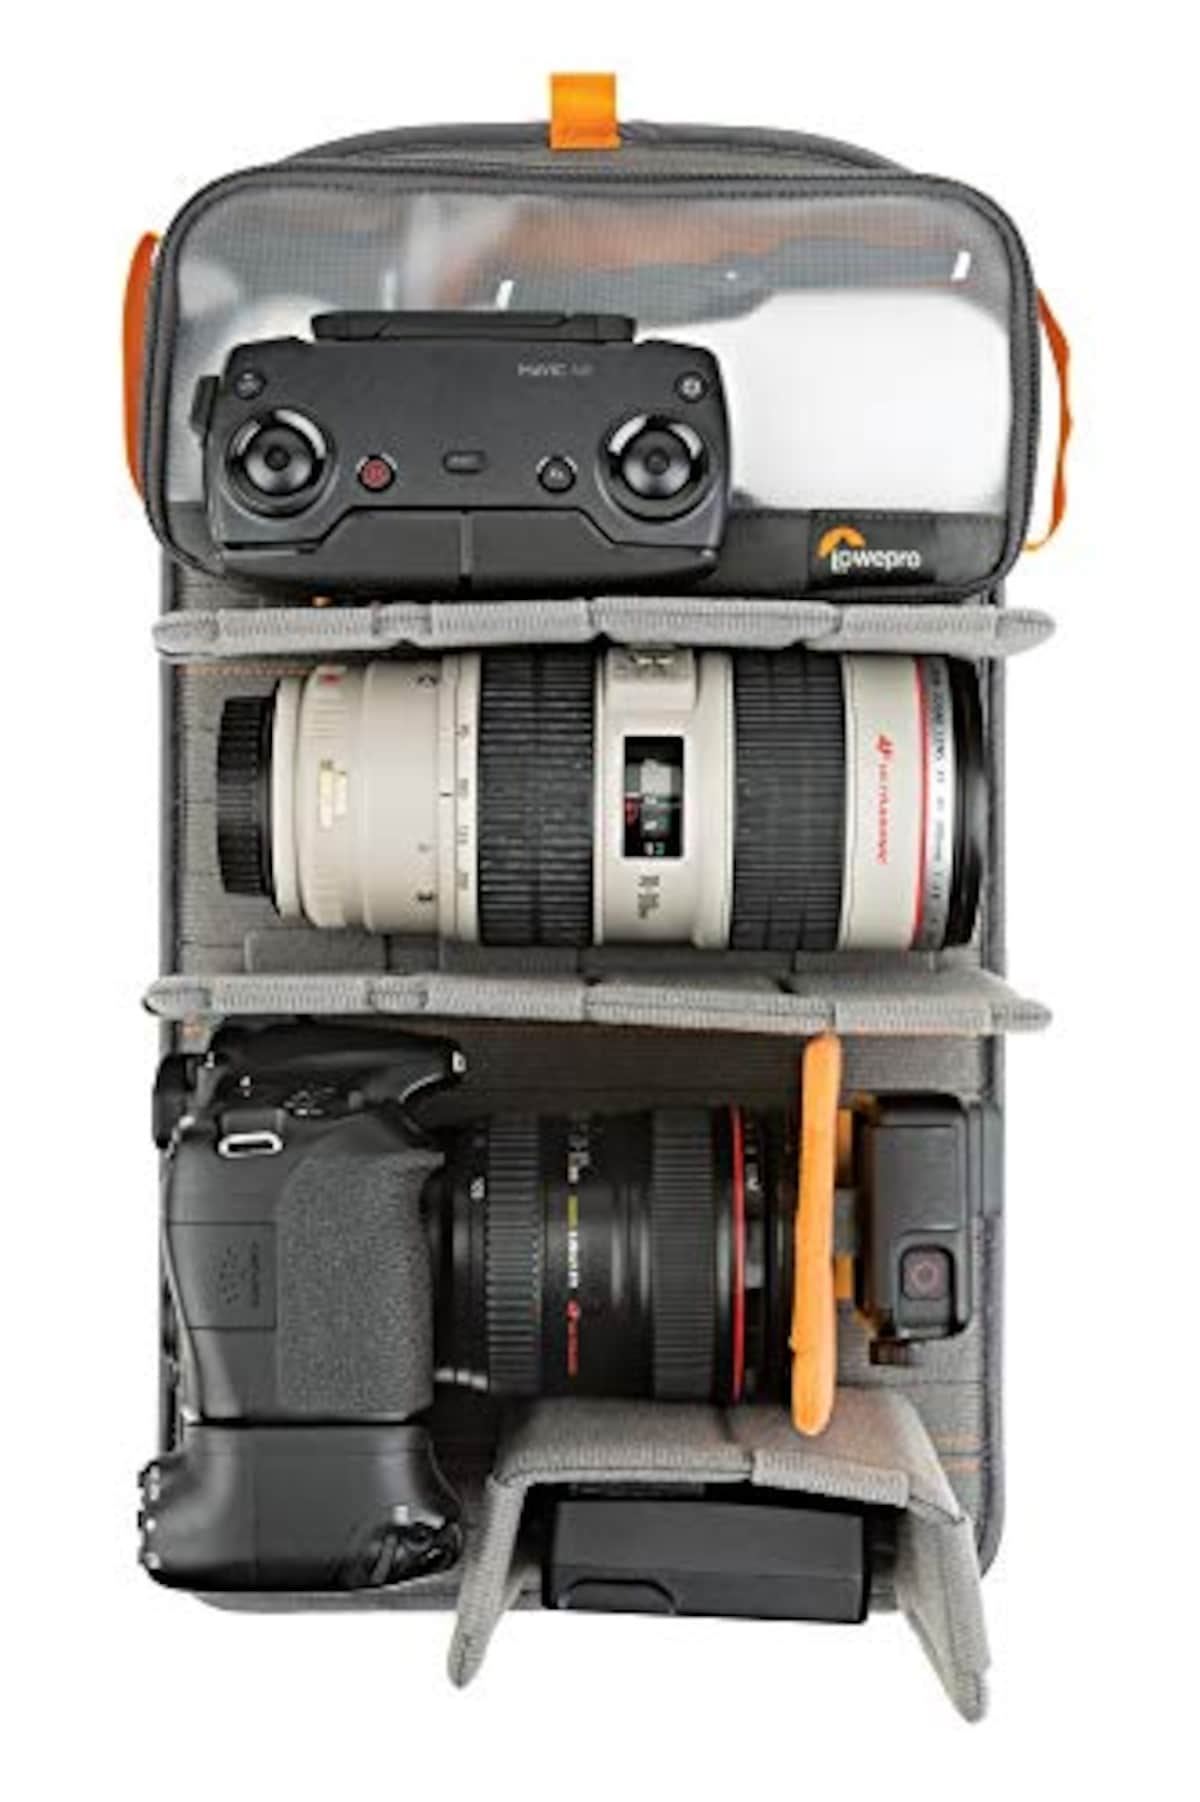  [Lowepro] カメラリュック フリーライン メンズ ブラック 48.7cm×29.3cm×20.8cm画像6 